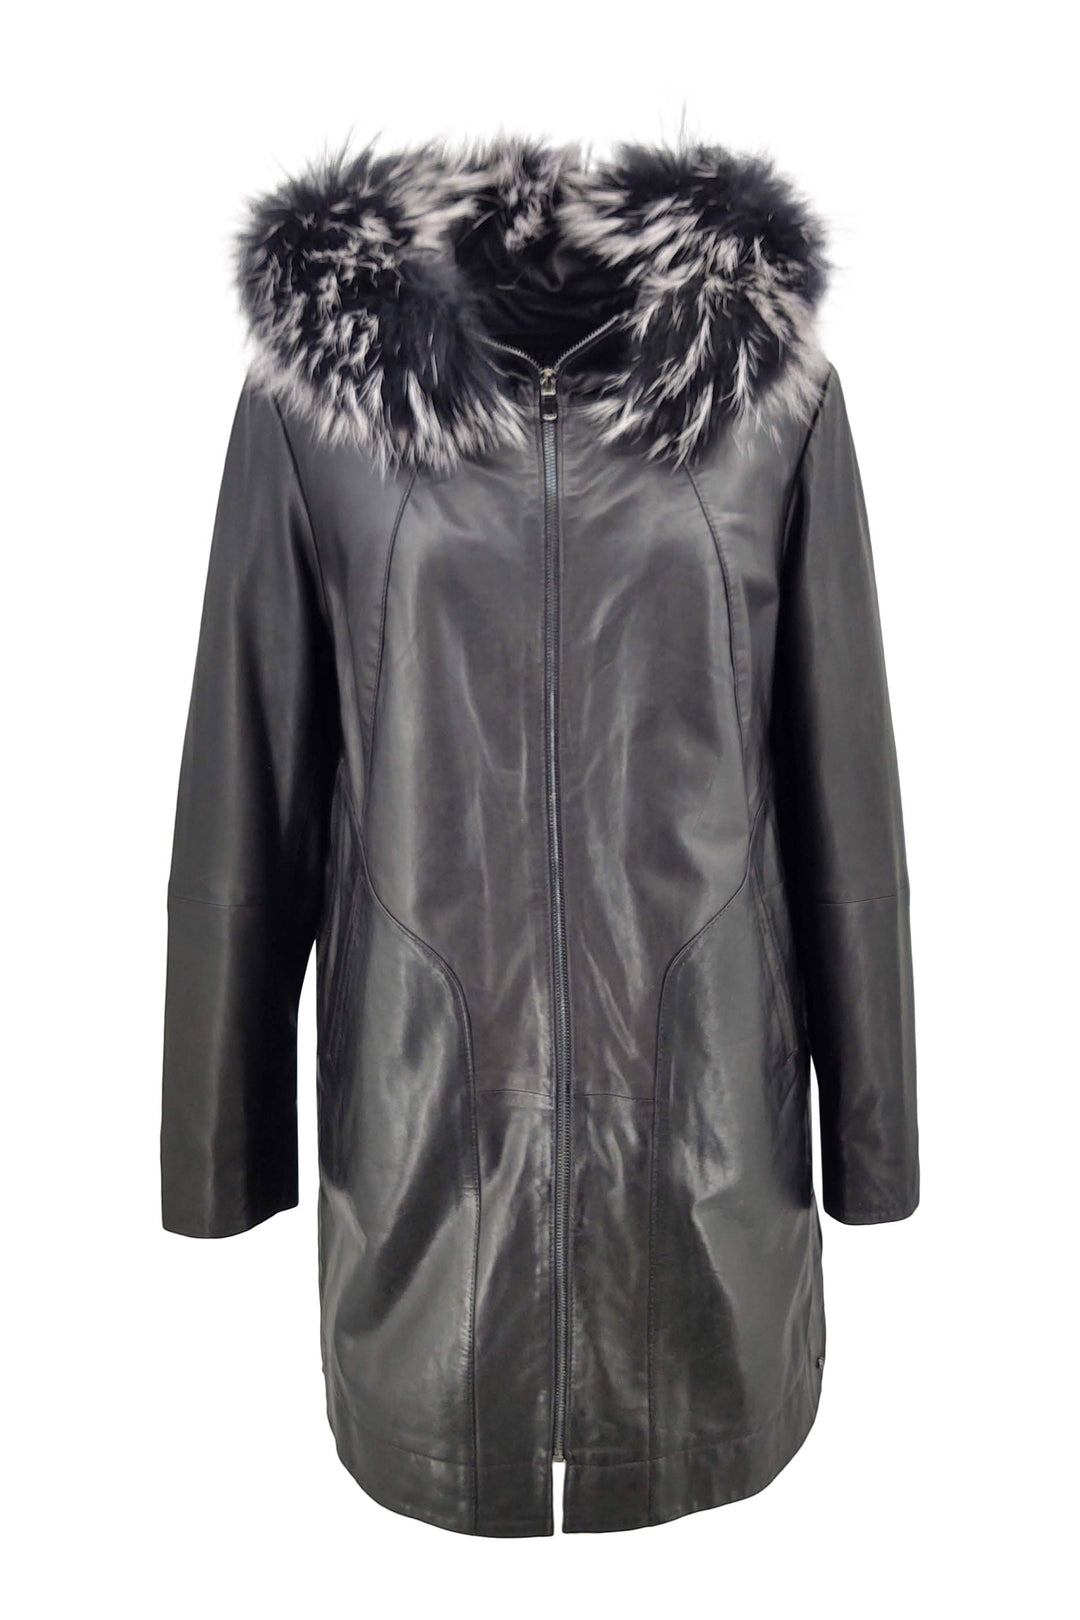 New Sofia - Lamb Glove Leather - Women - Black / Læder Skinds Jakke - Levinsky - Kvinde | STAMPE PELS